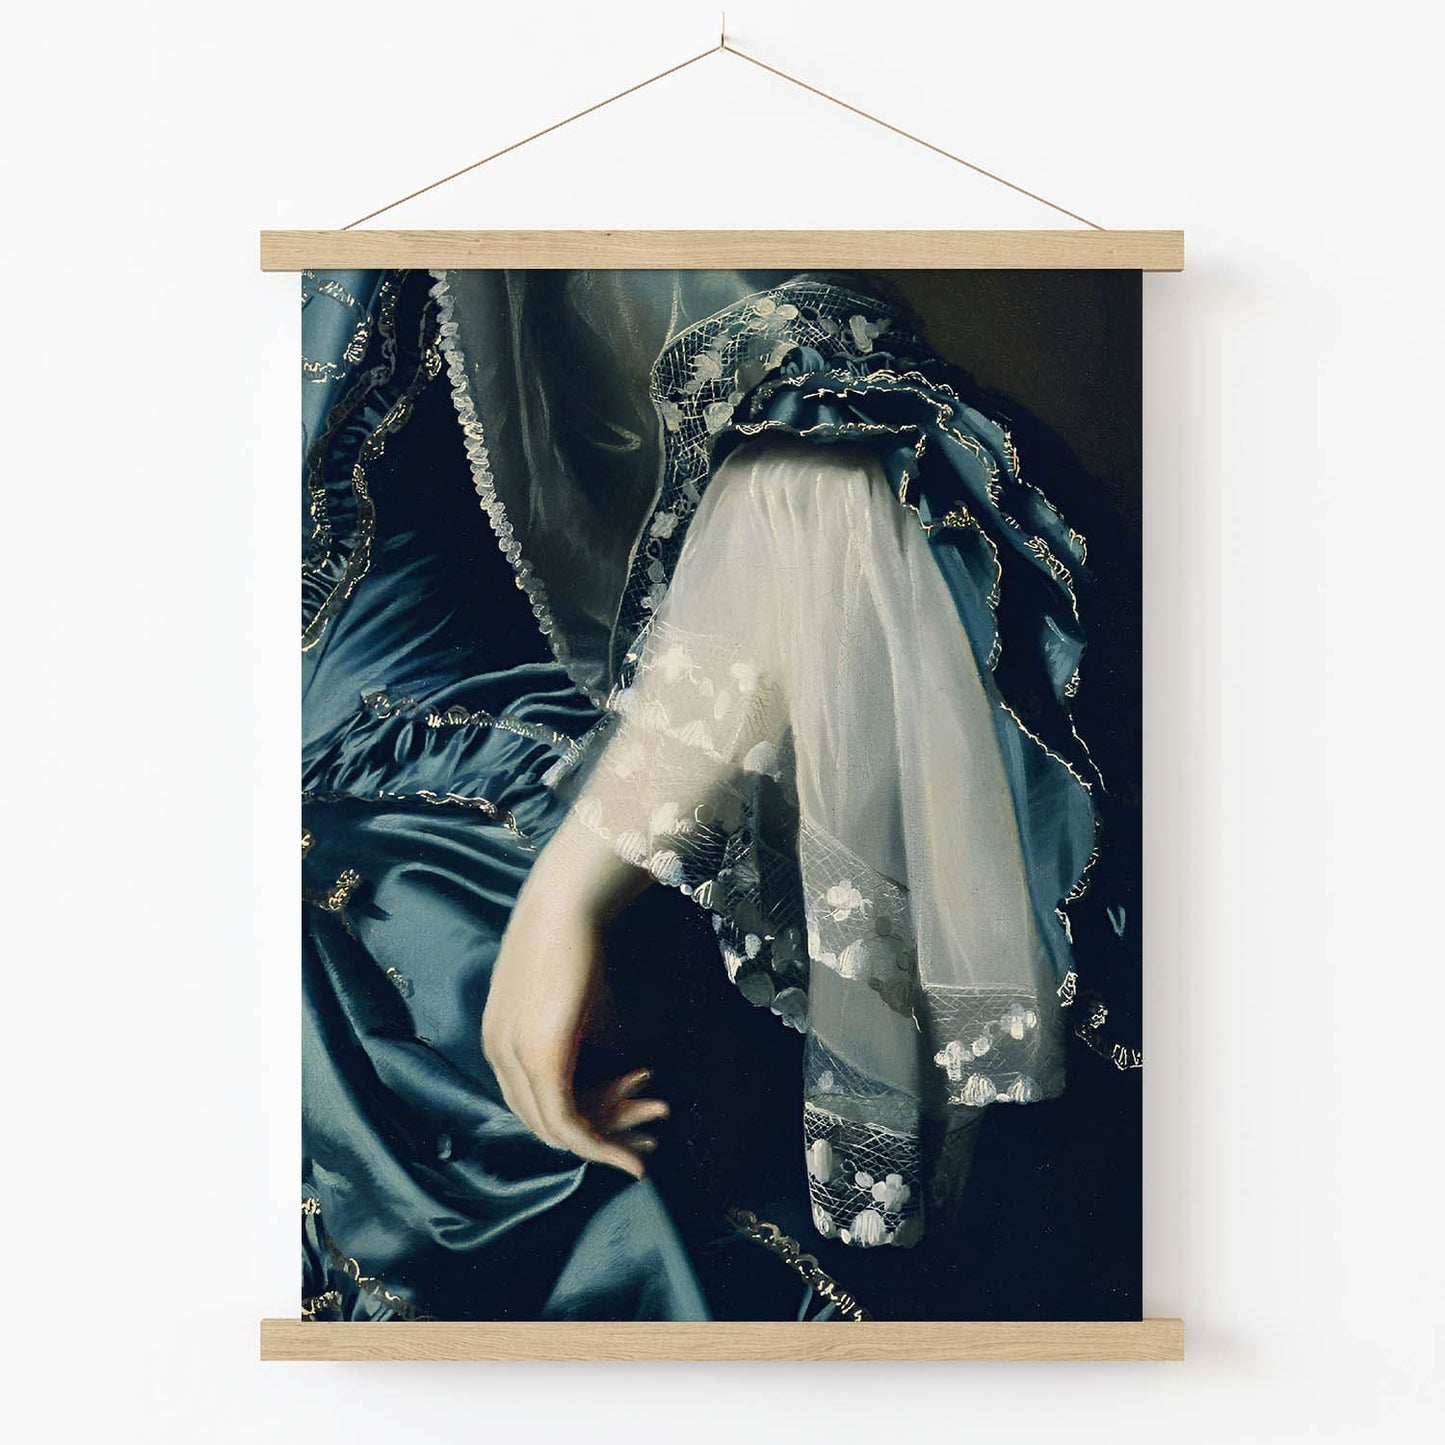 Aesthetic Sapphire Blue Dress Art Print in Wood Hanger Frame on Wall